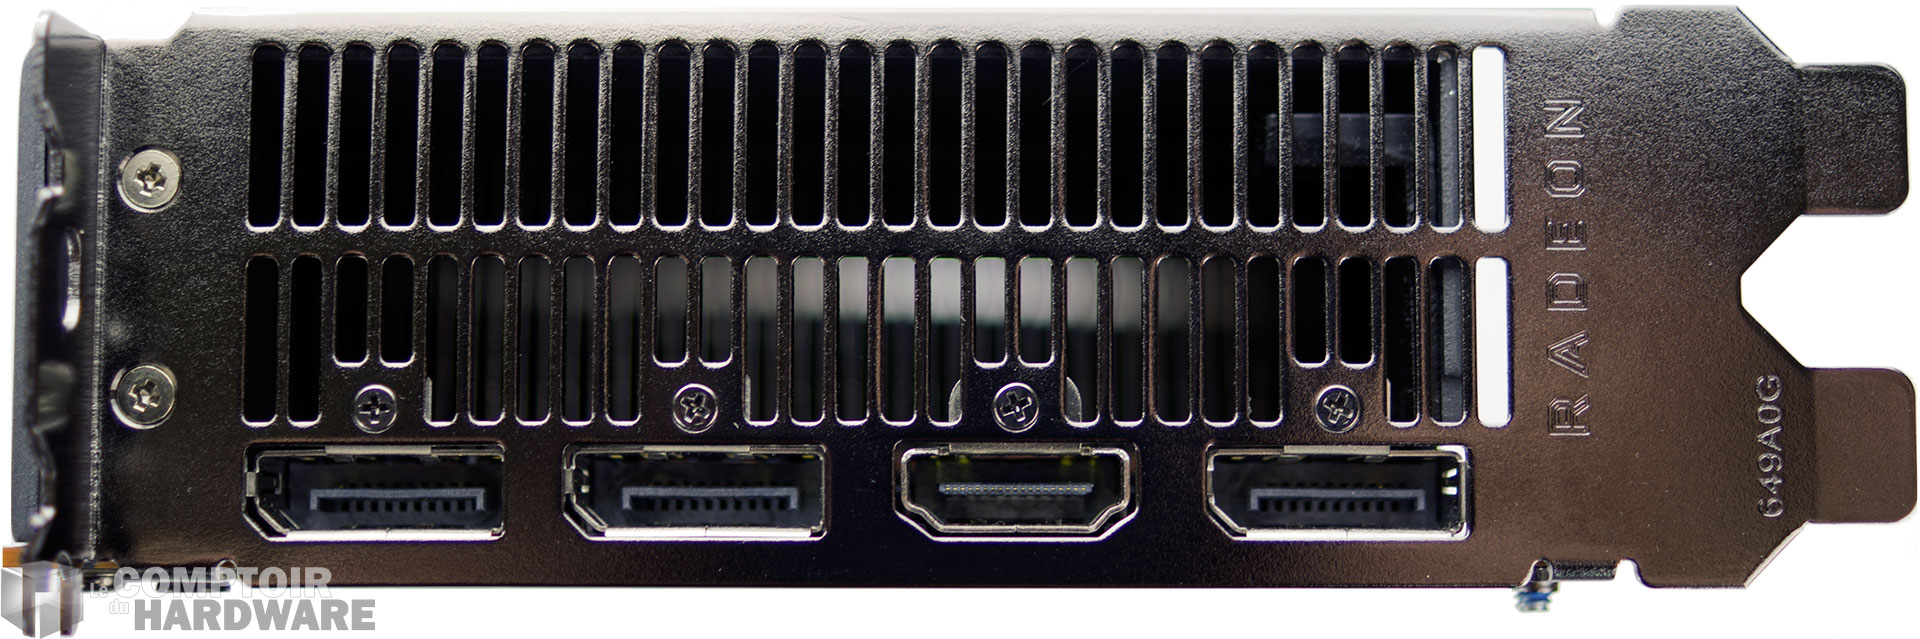 AMD Radeon RX 5700 : connectique vidéo